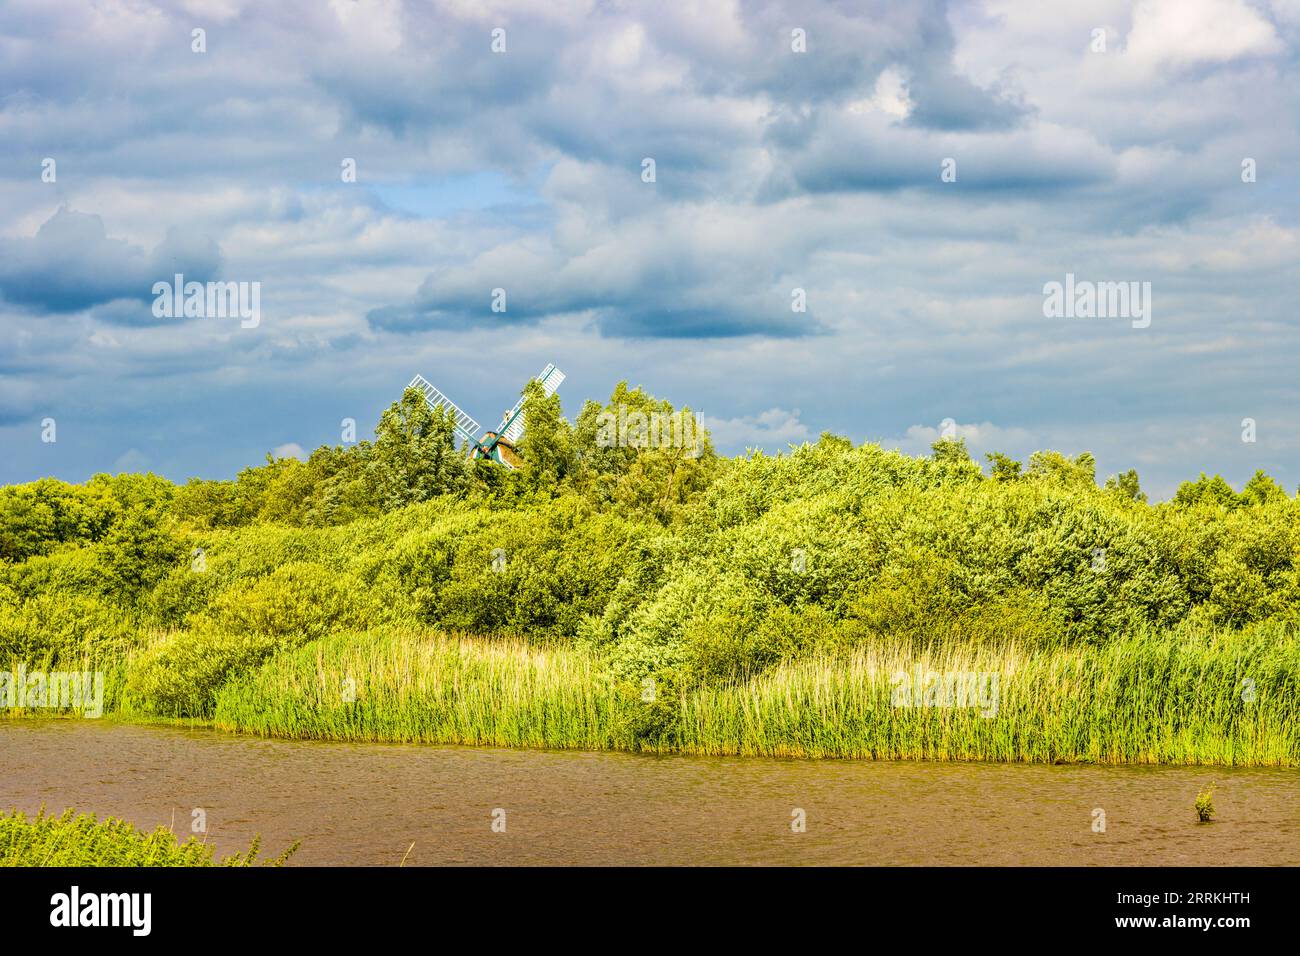 Les ailes du moulin à vent de Hengstforder jettent un regard juste au-dessus des arbres et des buissons de la végétation riveraine, du ciel, des nuages de tempête Banque D'Images